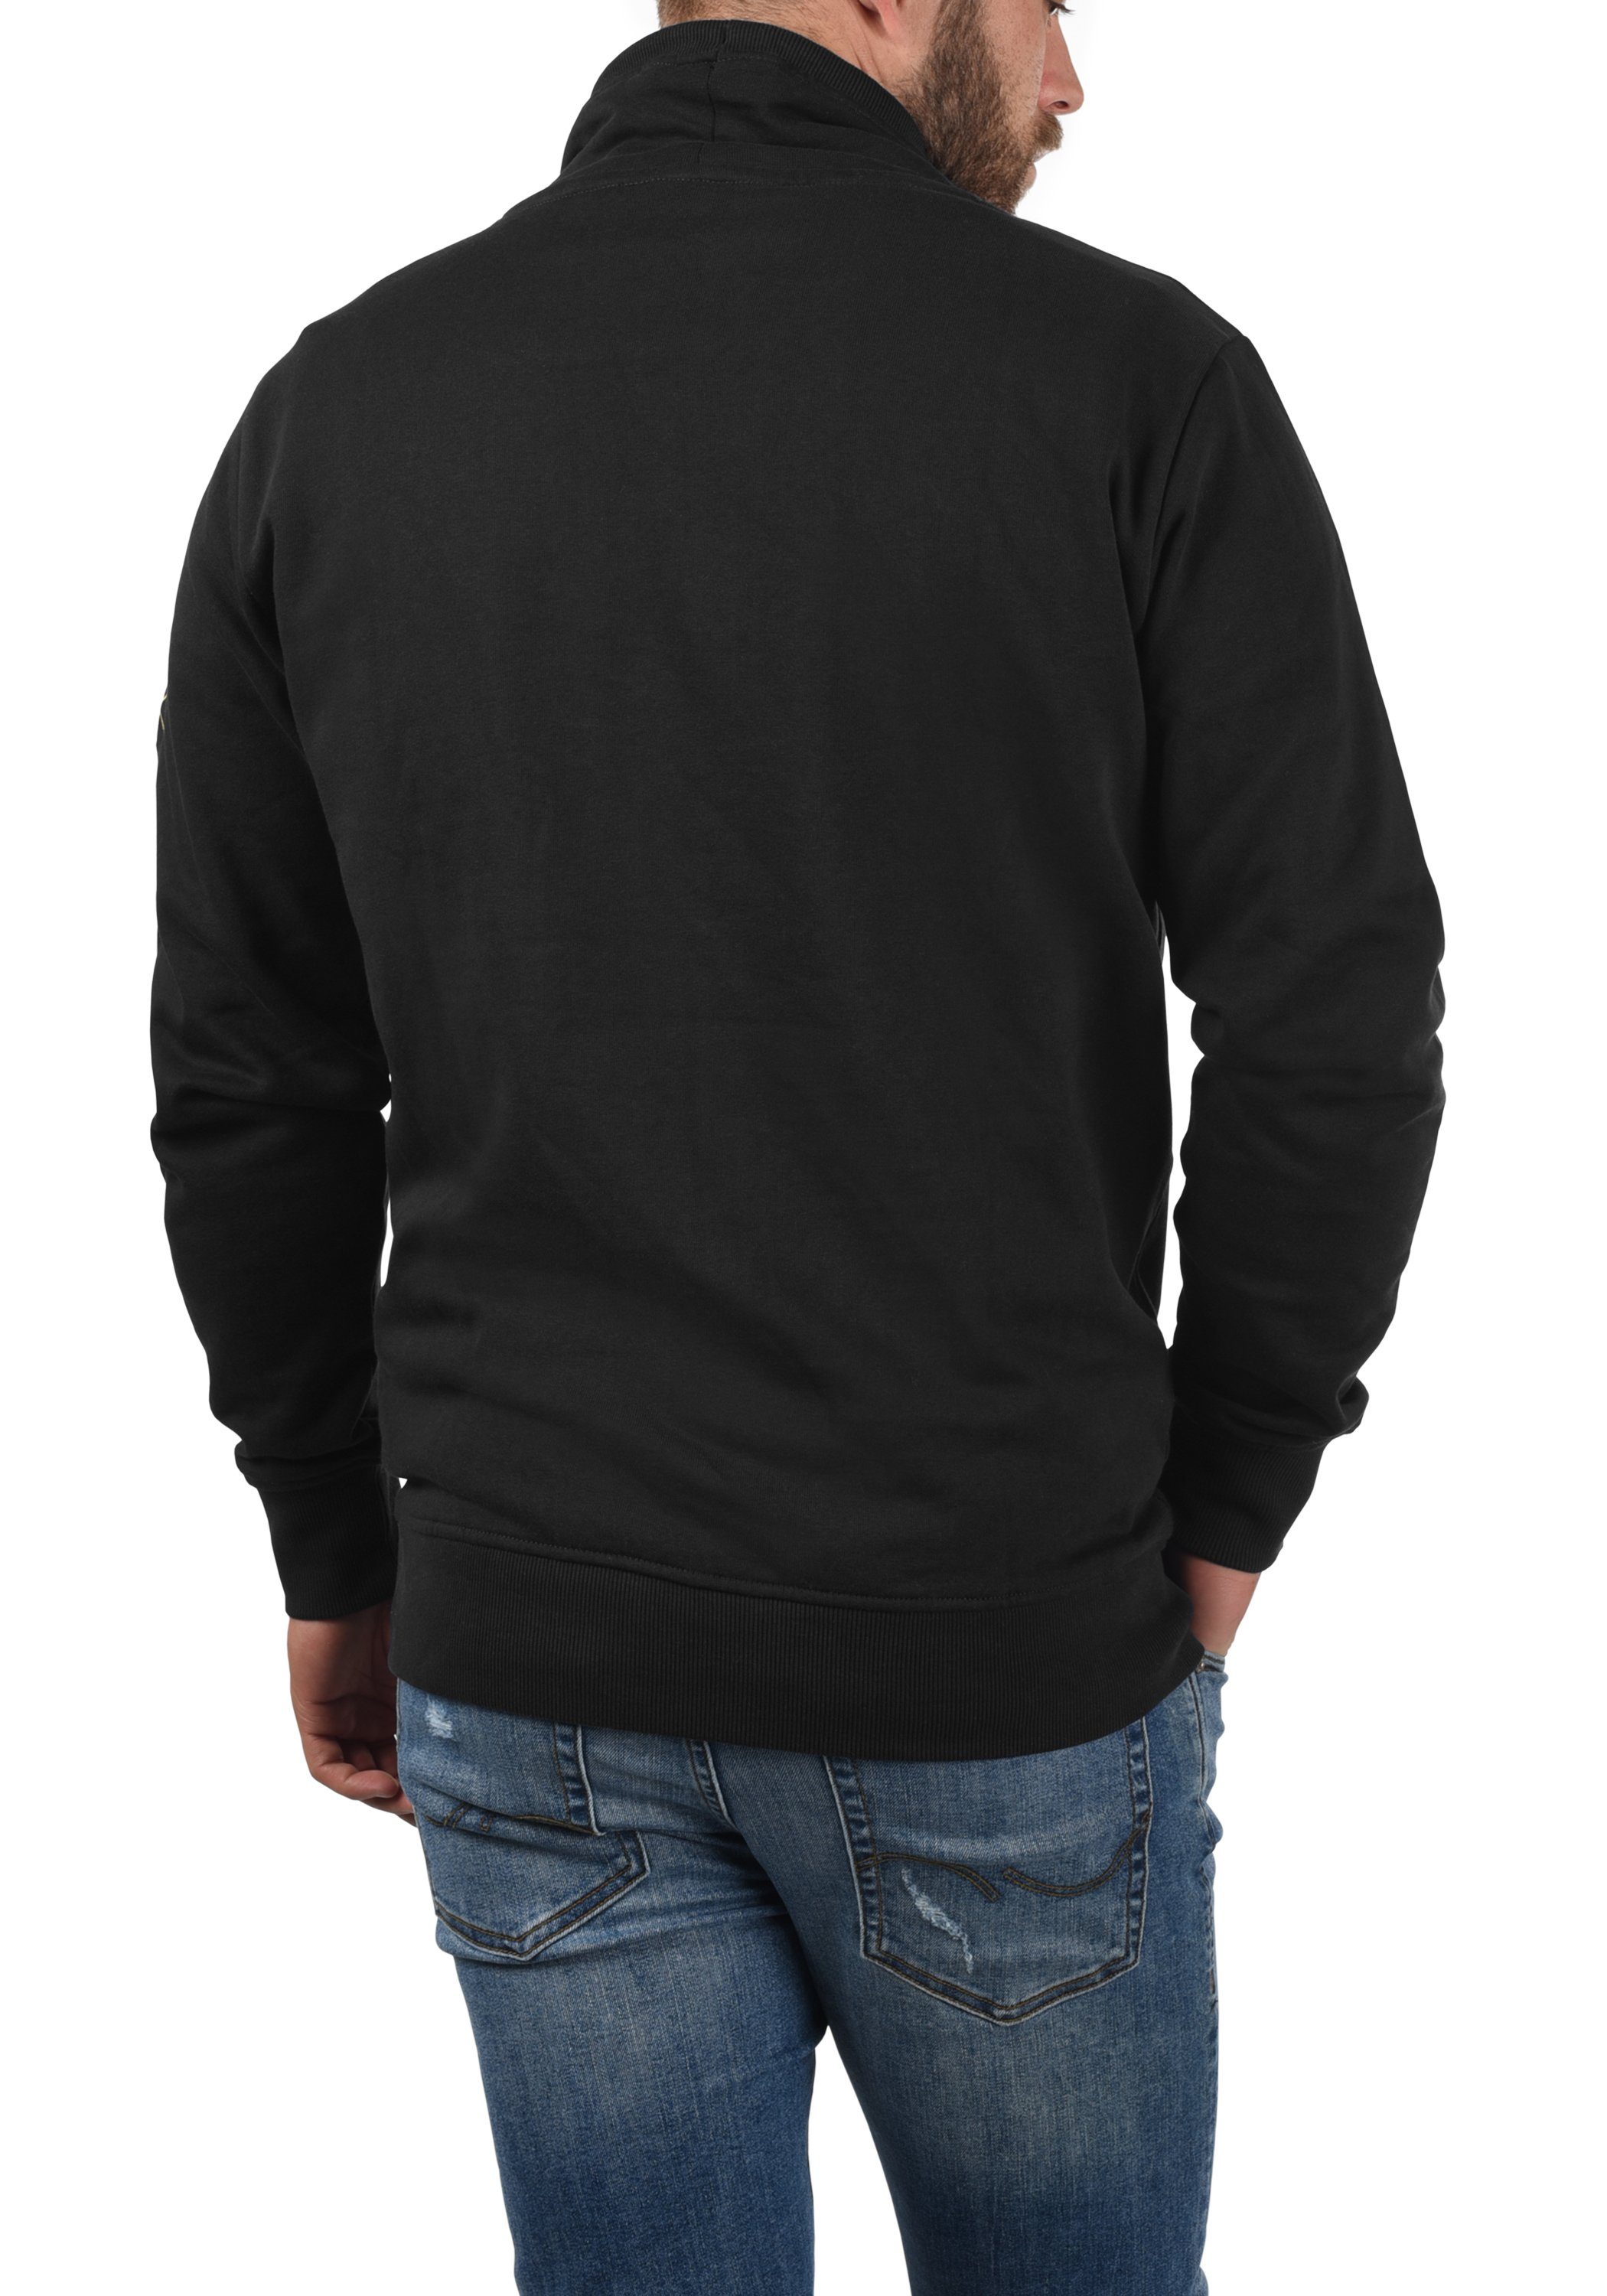 Solid Sweatshirt SDKaan (194007) mit Kapuzenpullover kontrastreichen Black farblichen Details